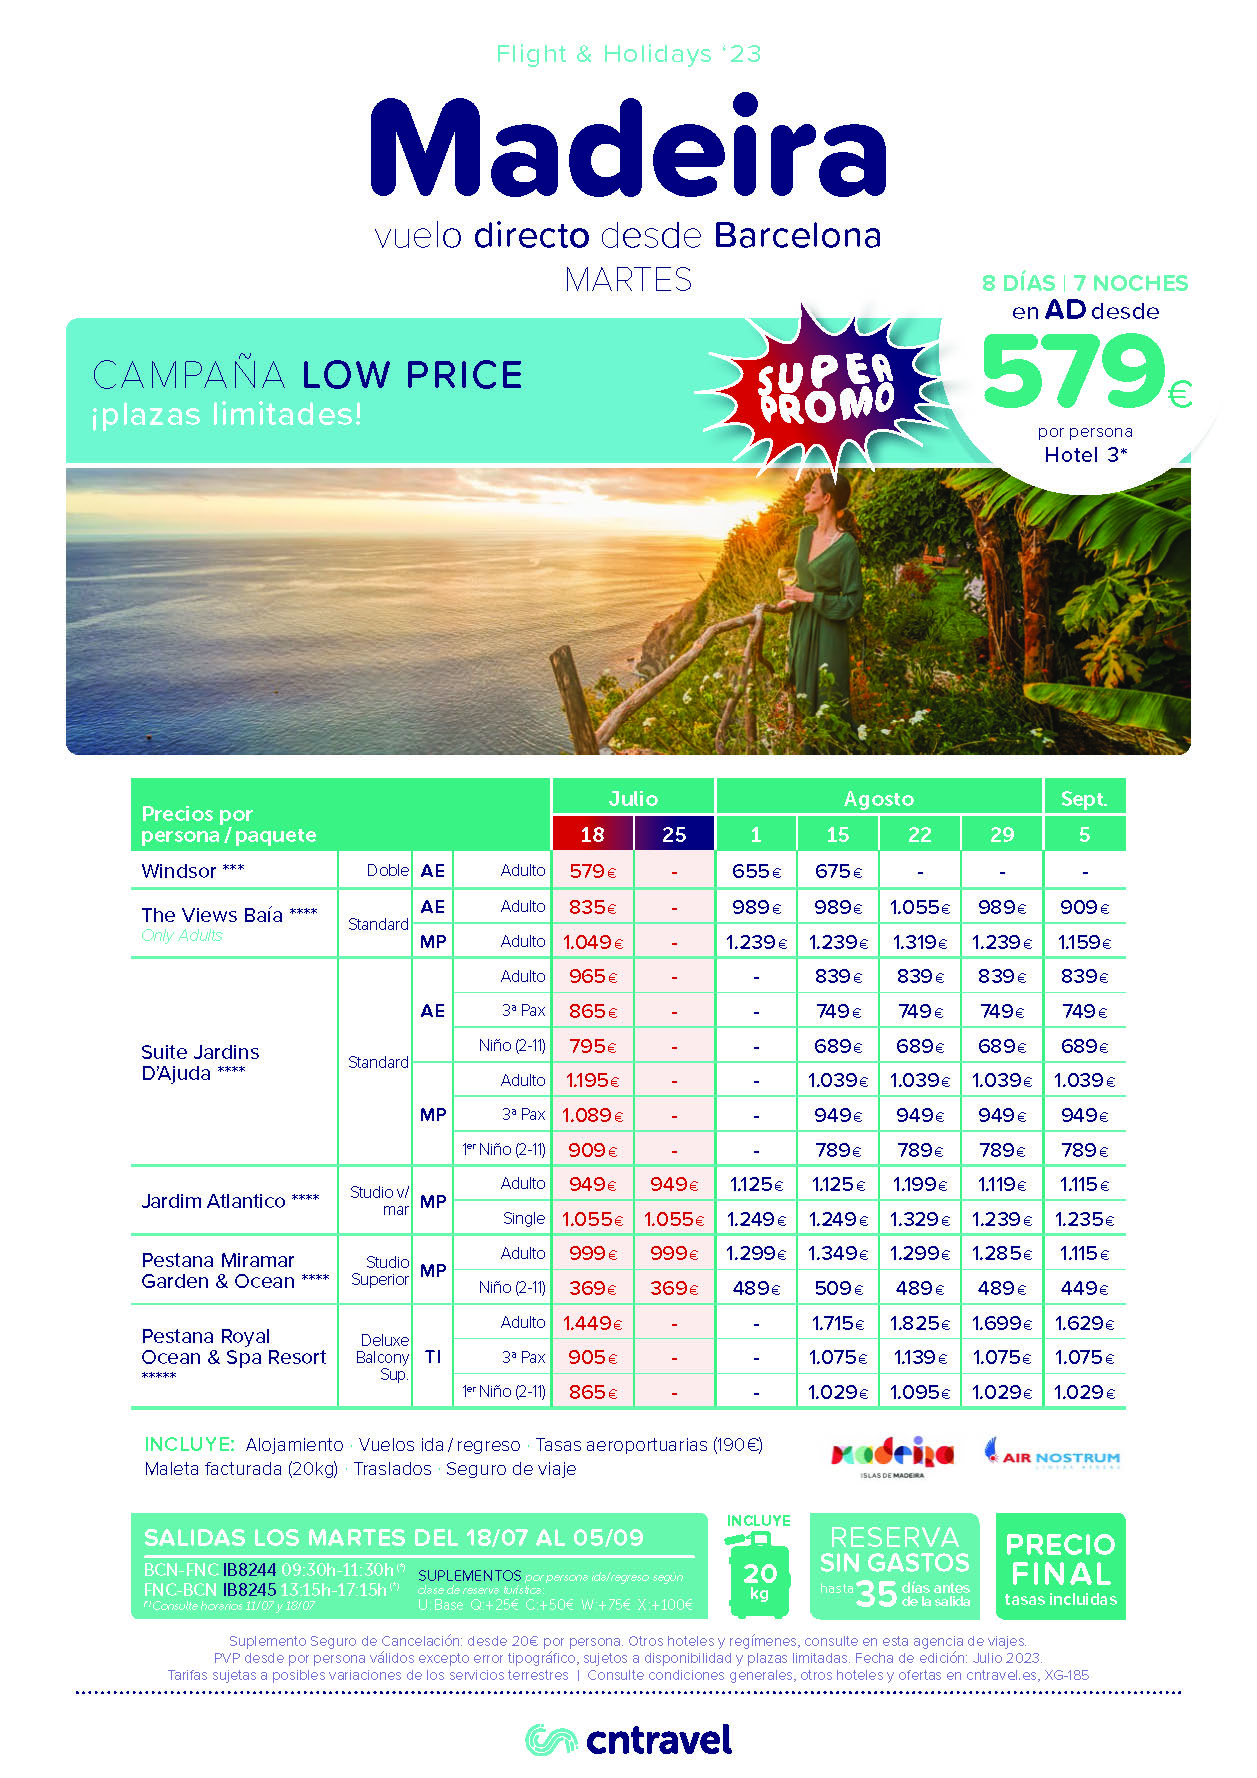 Ofertas CN Travel Vacaciones en Madeira Low Price Julio Agosto y Septiembre 2023 8 dias vuelos directos Air Nostrum desde Barcelona